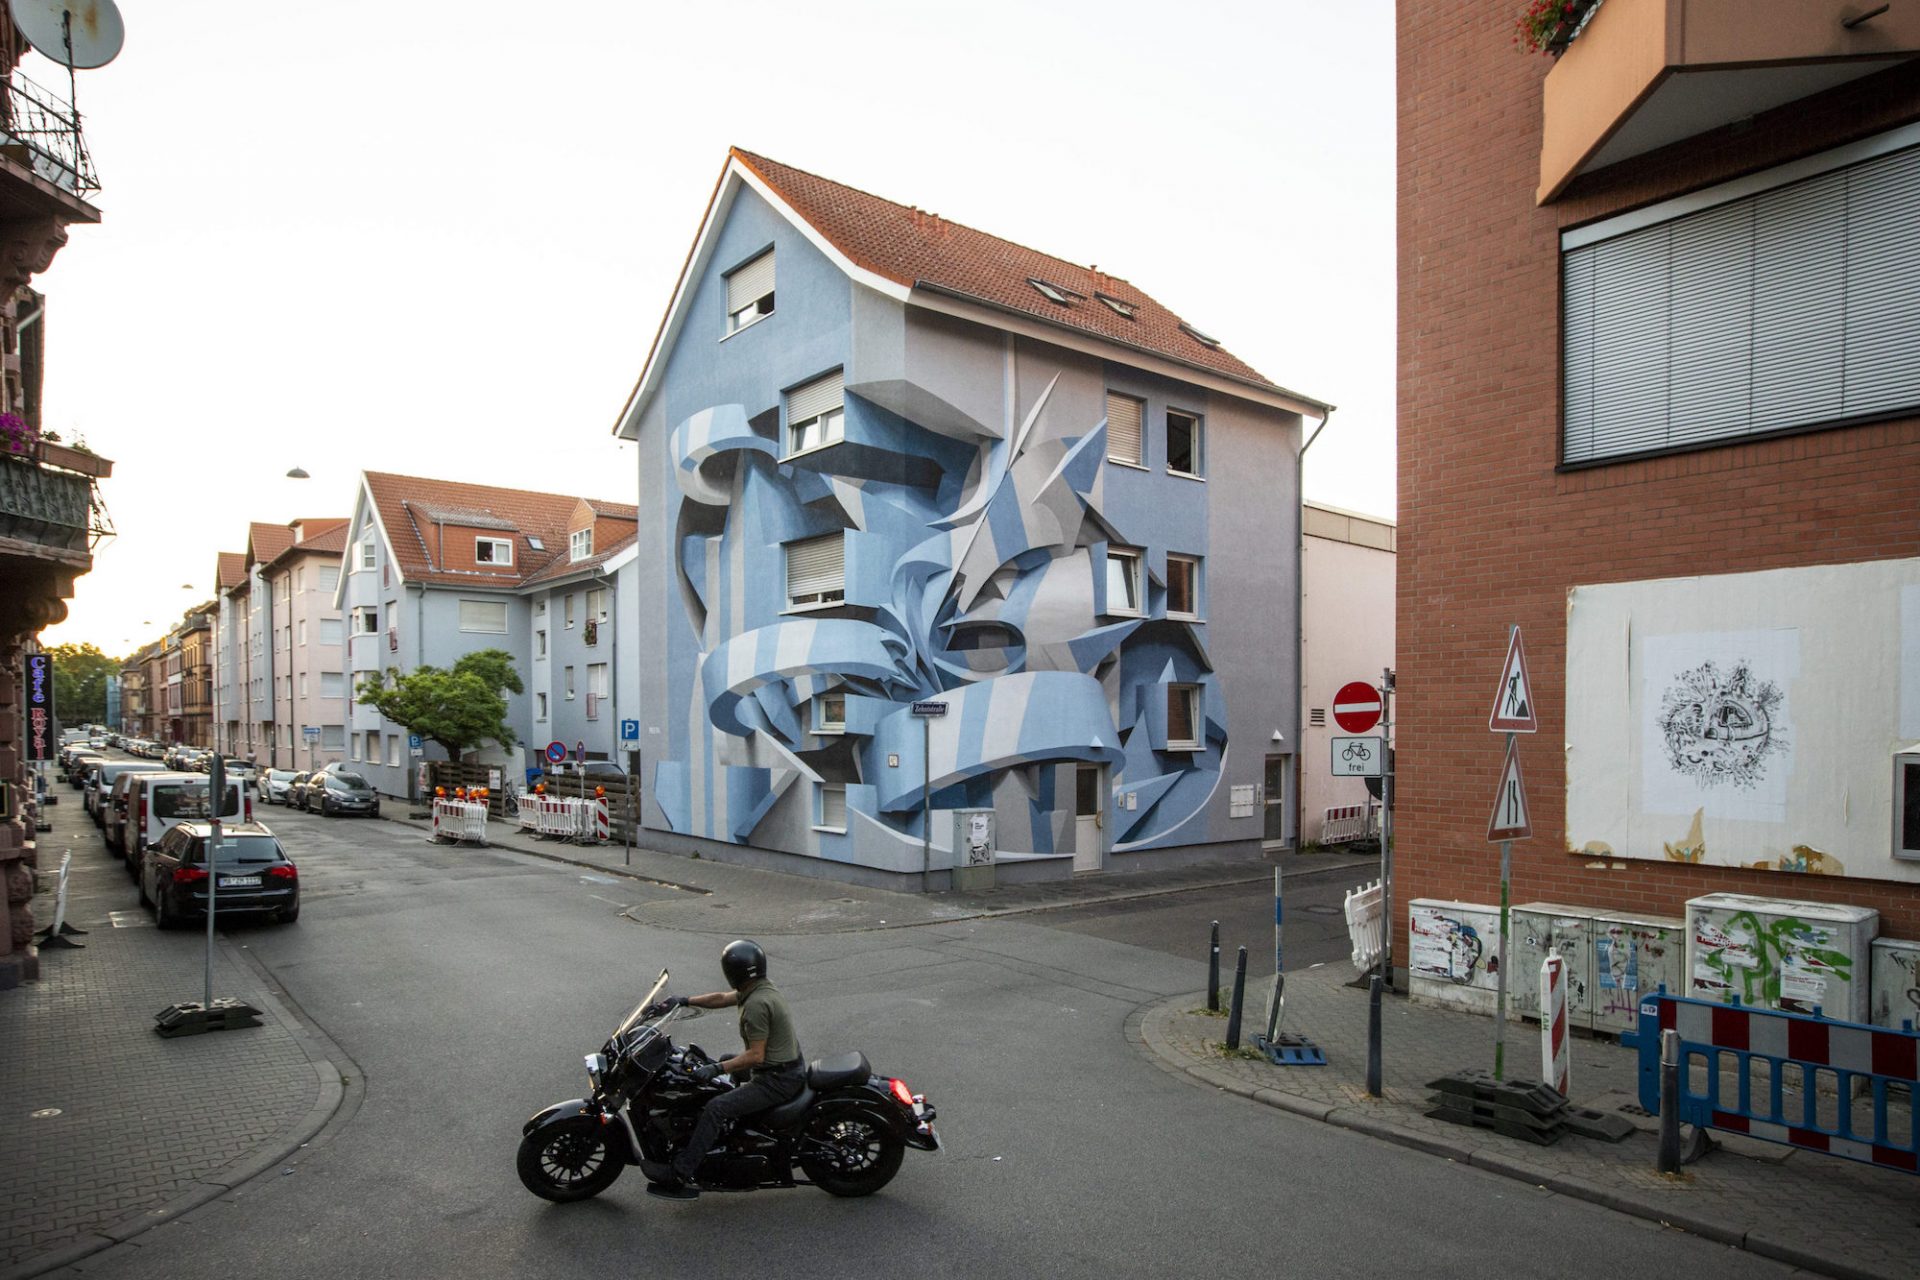 L'artiste Peeta transforme la ville avec ses incroyables illusions d'optique 3D